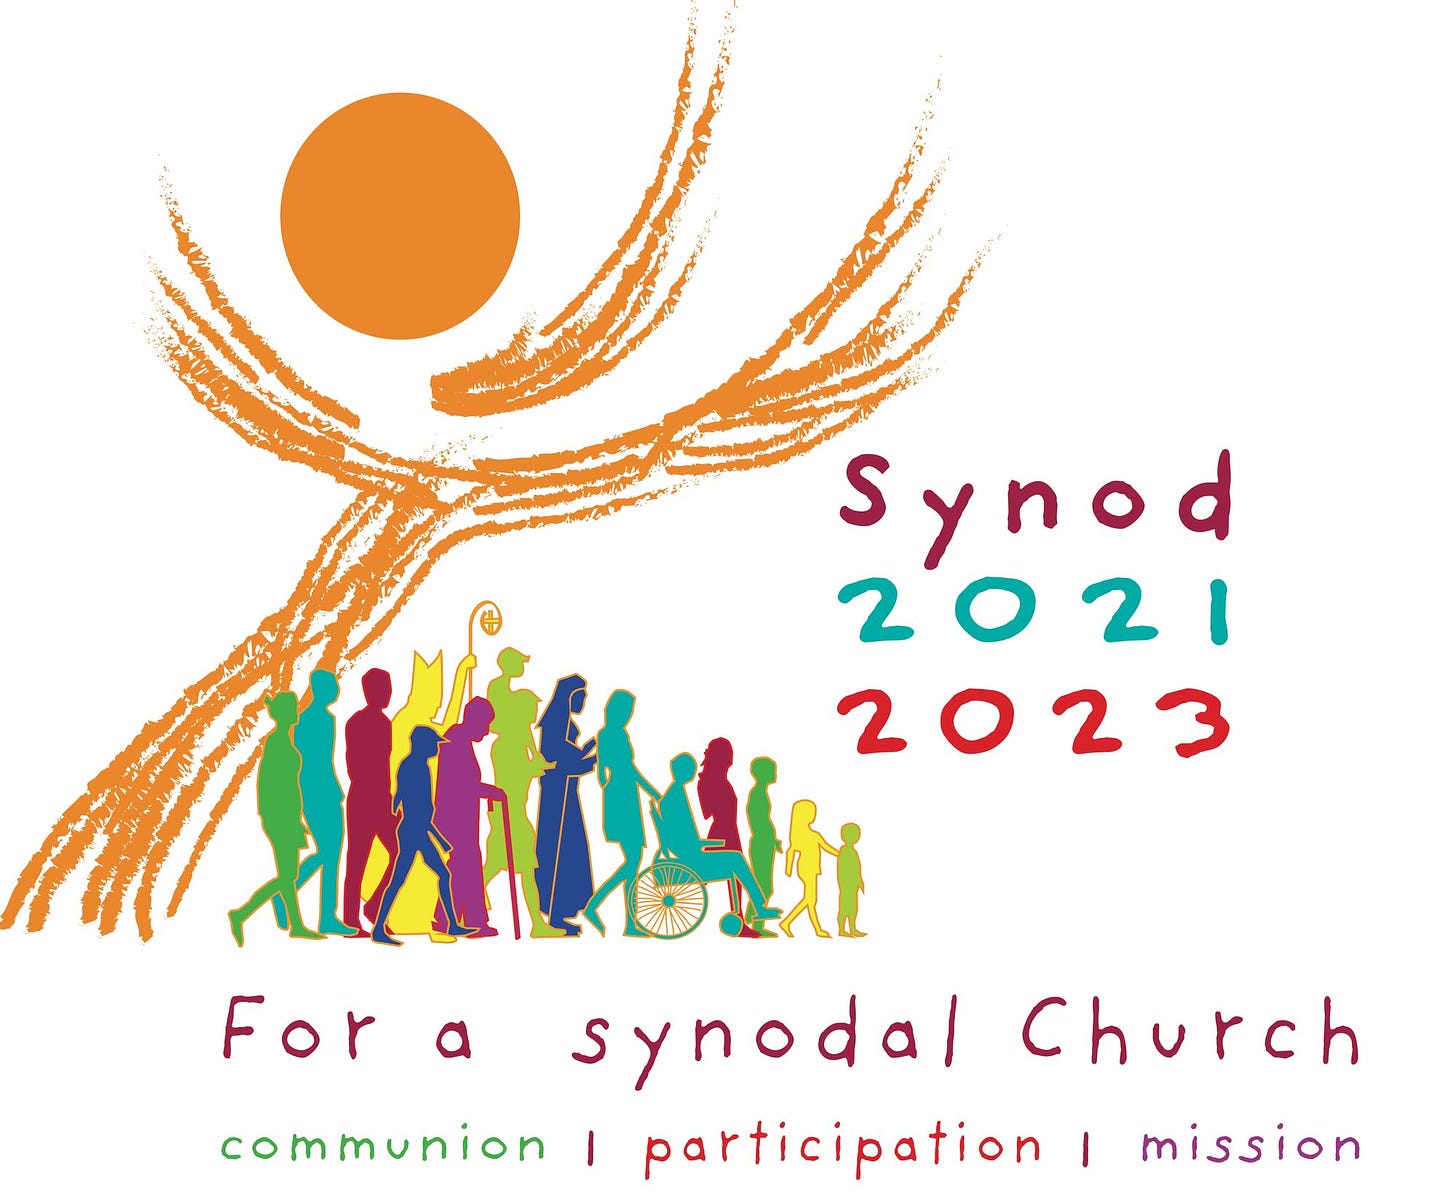 USCCB: Synod on synodality has ‘renewed’ U.S. Church